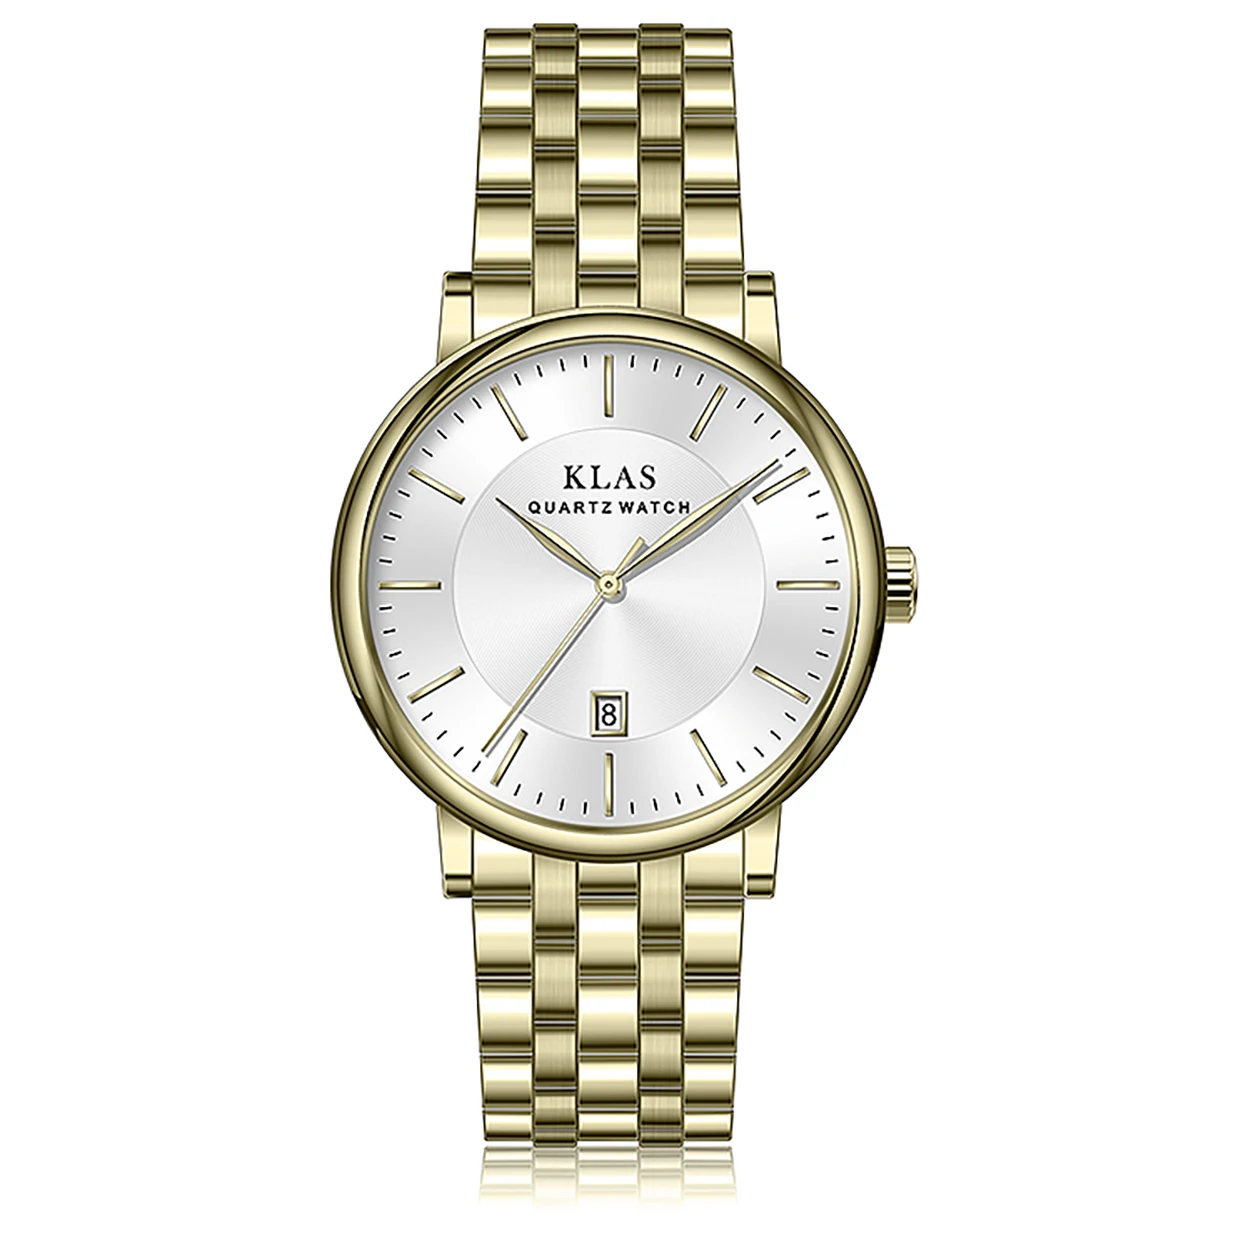 

Человеком вкус календарь Водонепроницаемый кварцевые часы мужские Бизнес часы KLAS Брендовые часы женские бренд